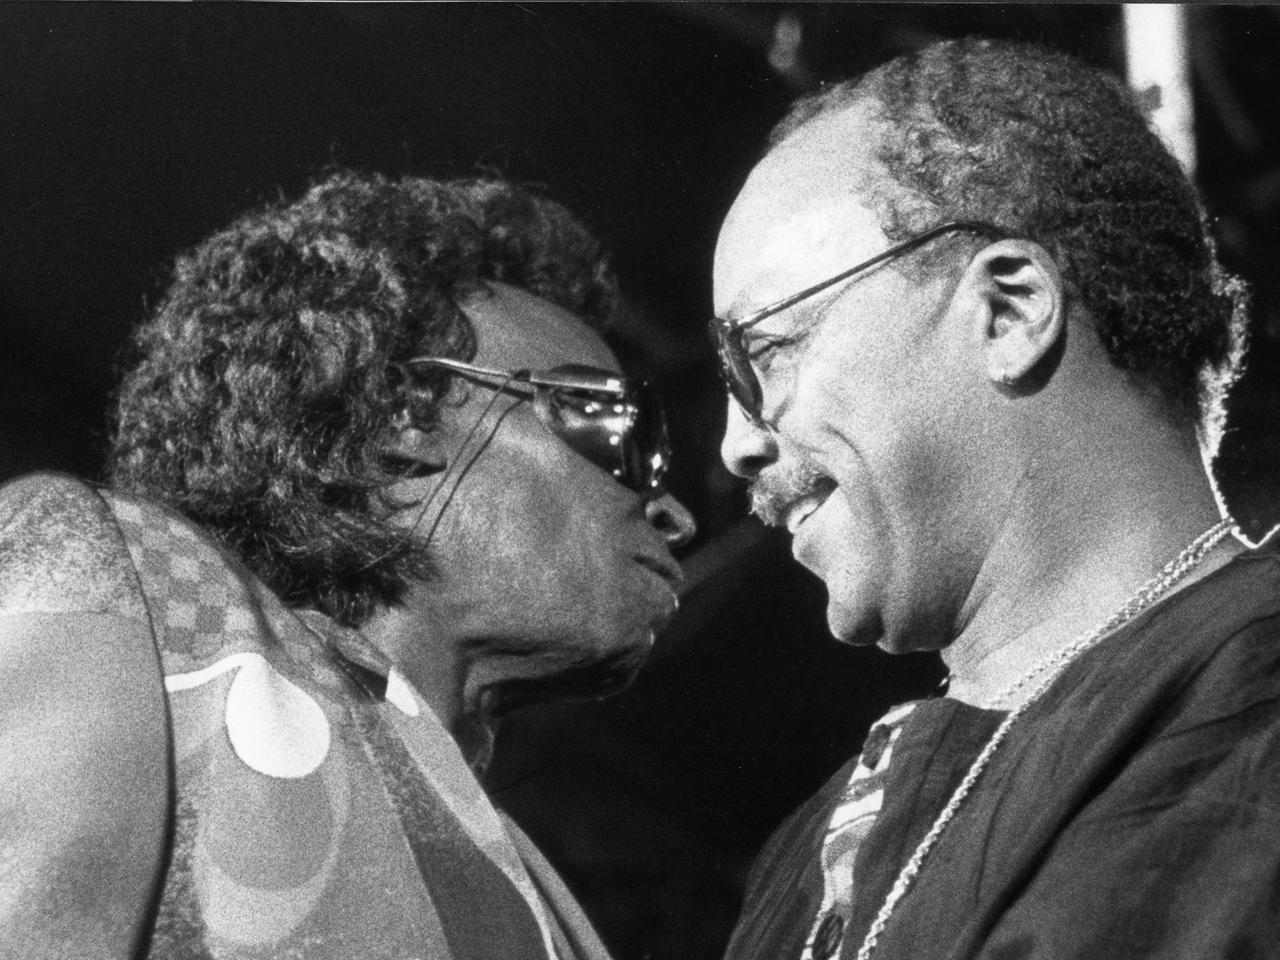 Miles Davis in hellem Anzug, mit vollem Haar und Sonnenbrille, steht ganz dicht vor Quincy Jones, der ebenfalls eine Brille trägt und schüttereres Haar hat.Jones lächelt. Das Bild zeigt beide Musiker im Profil.